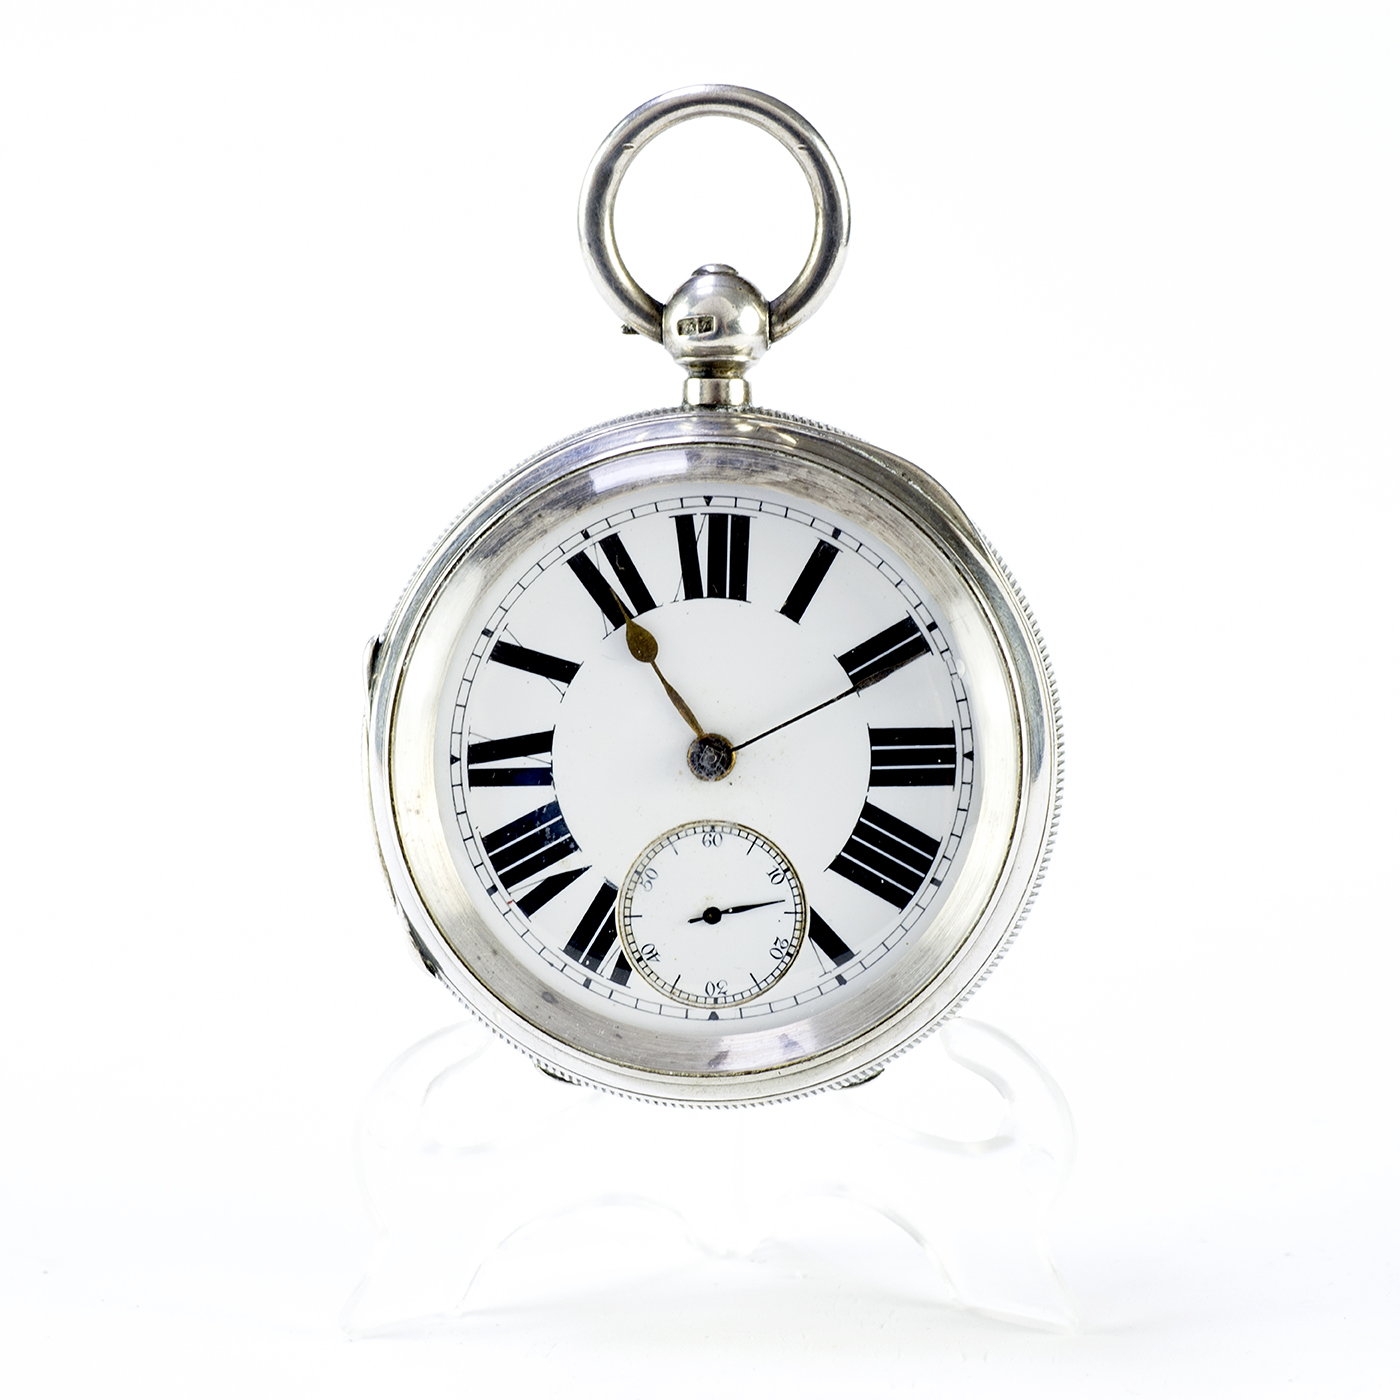 Reloj de bolsillo inglés, lepine, Half Fusee (Semicatalino). England, 1899.